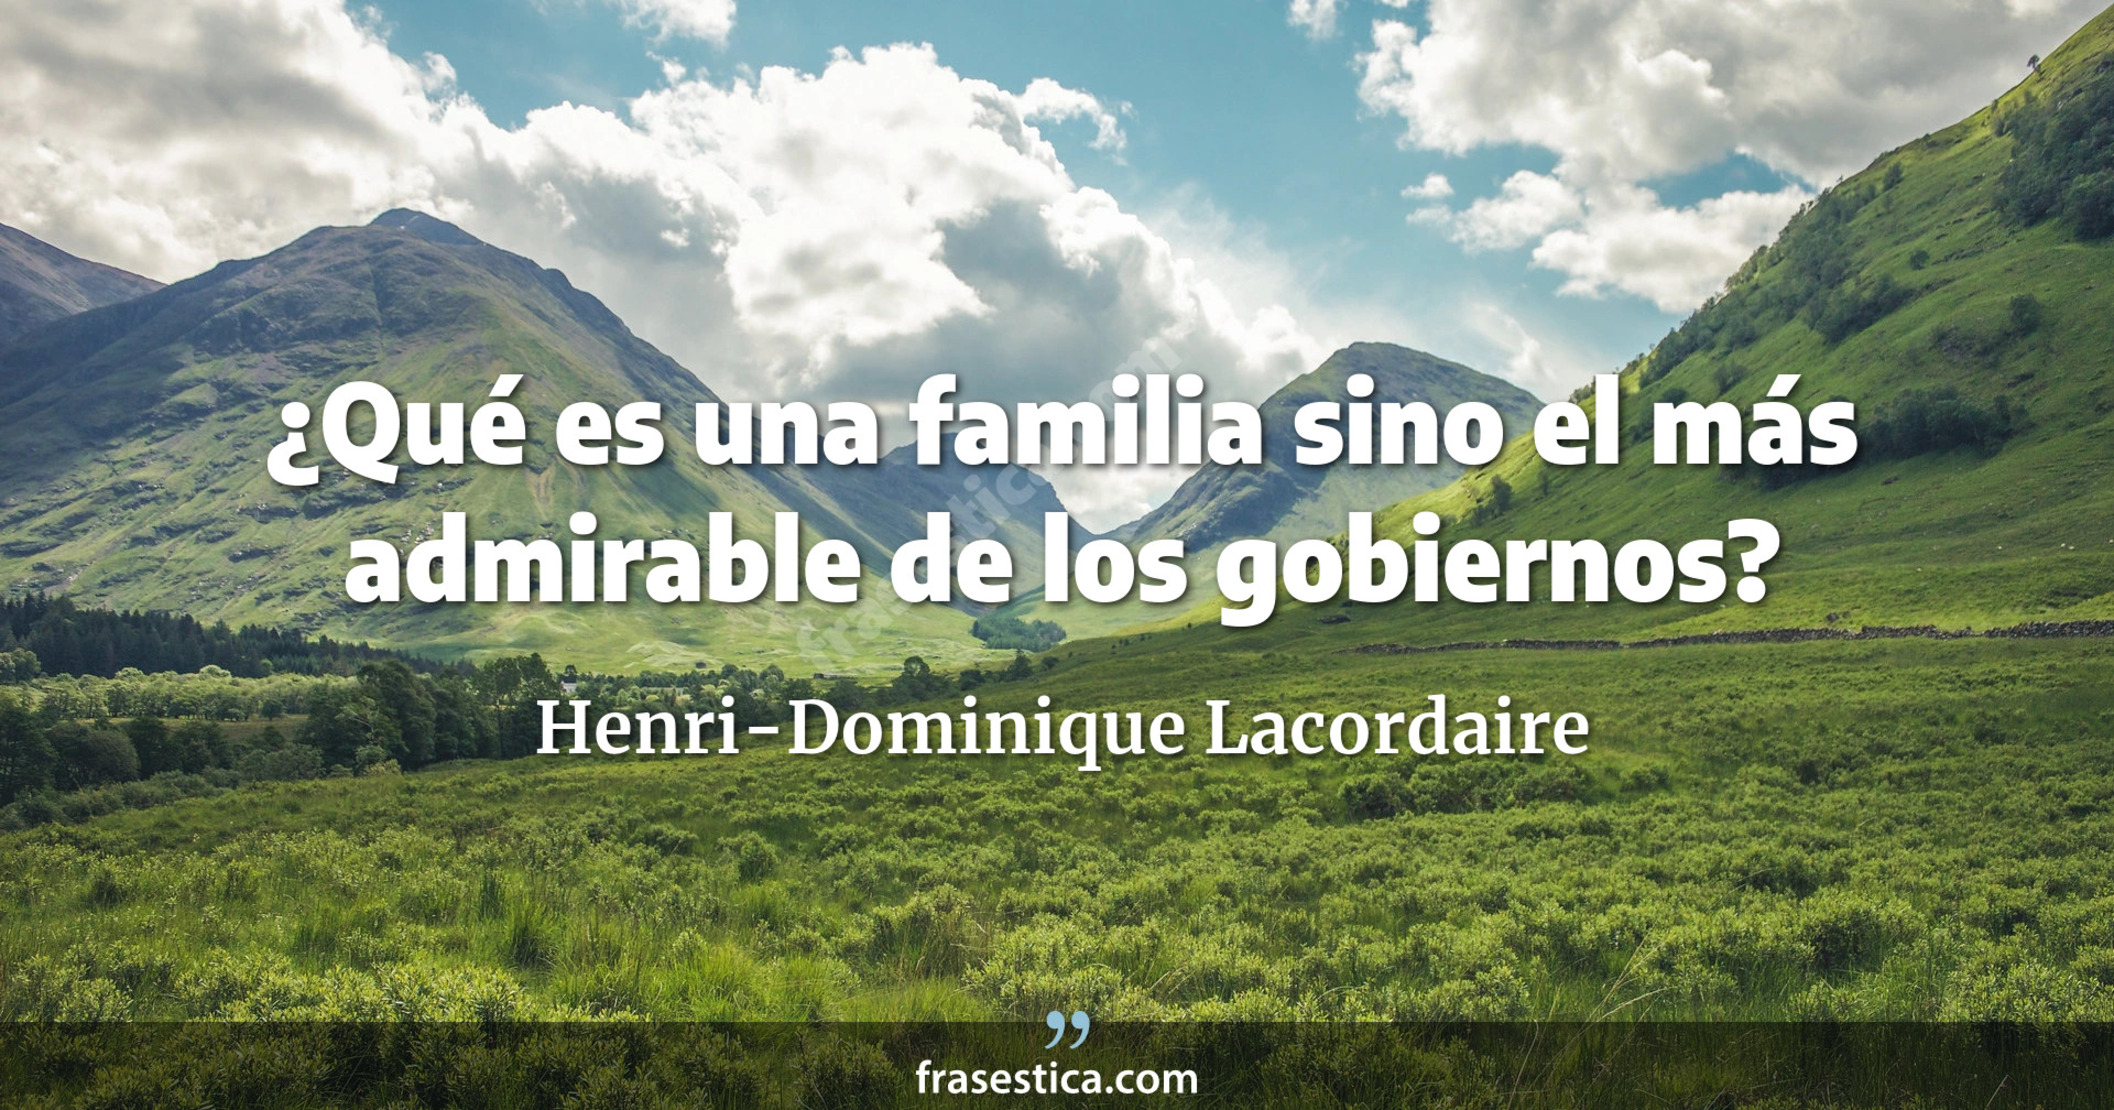 ¿Qué es una familia sino el más admirable de los gobiernos? - Henri-Dominique Lacordaire